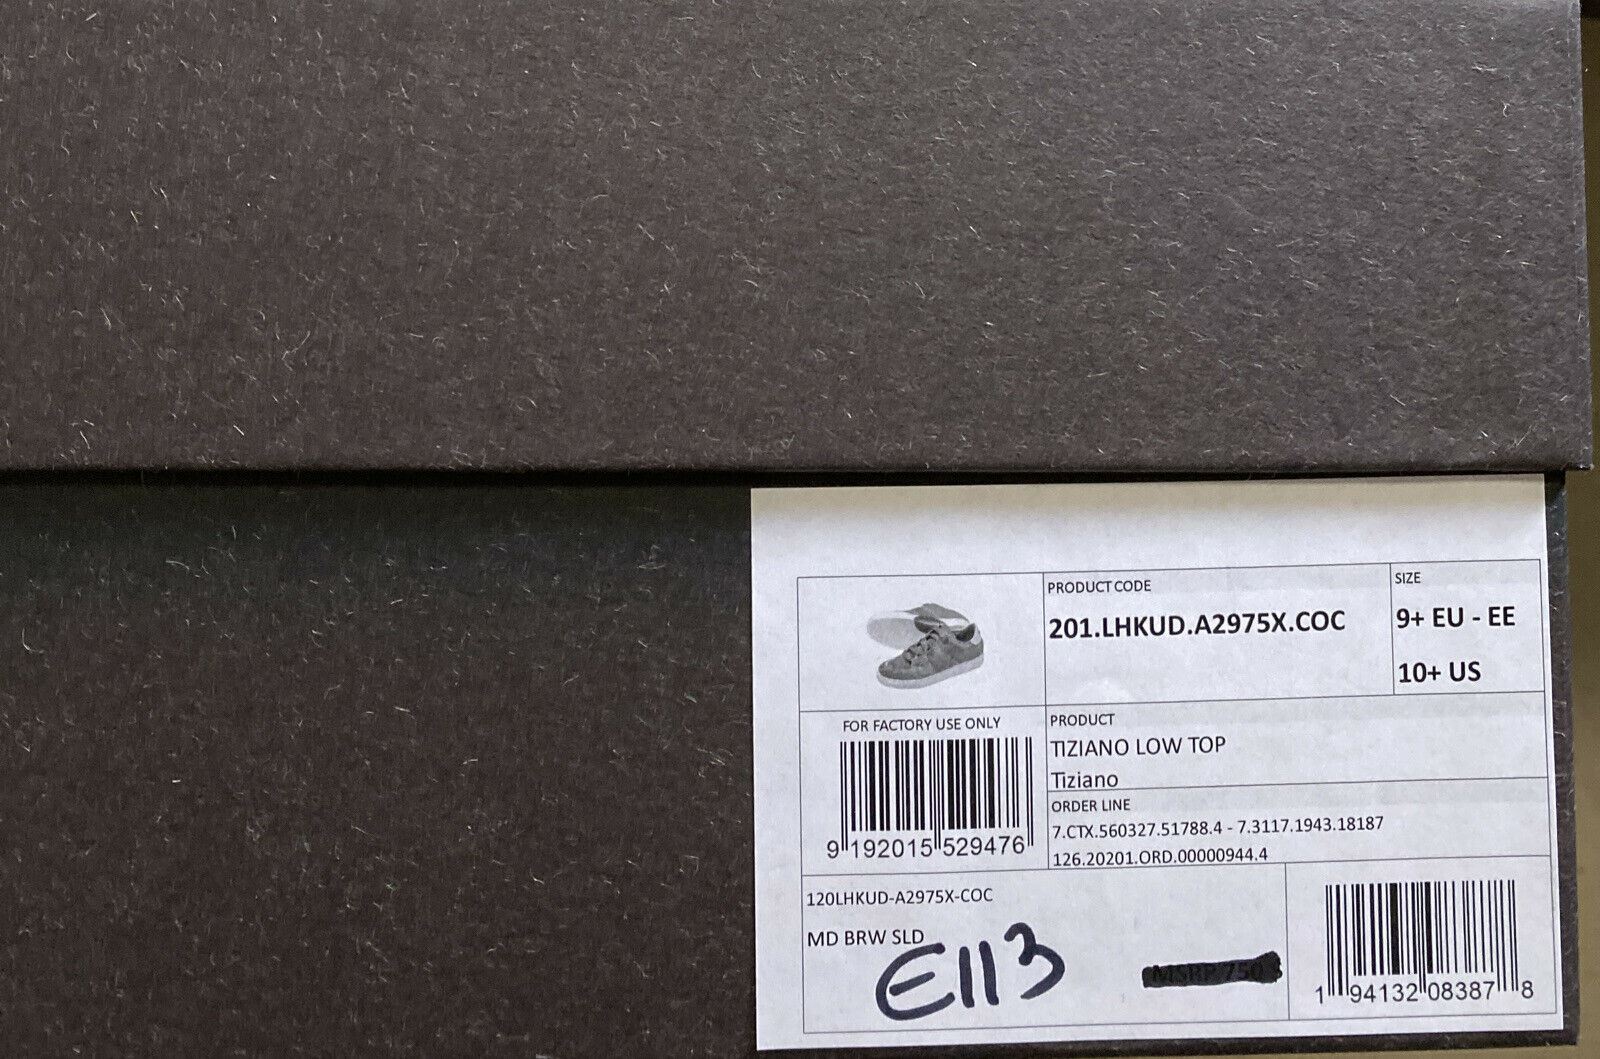 Новые замшевые/кожаные кроссовки Ermenegildo Zegna Couture за 850 долларов США LT Brown 10.5 US